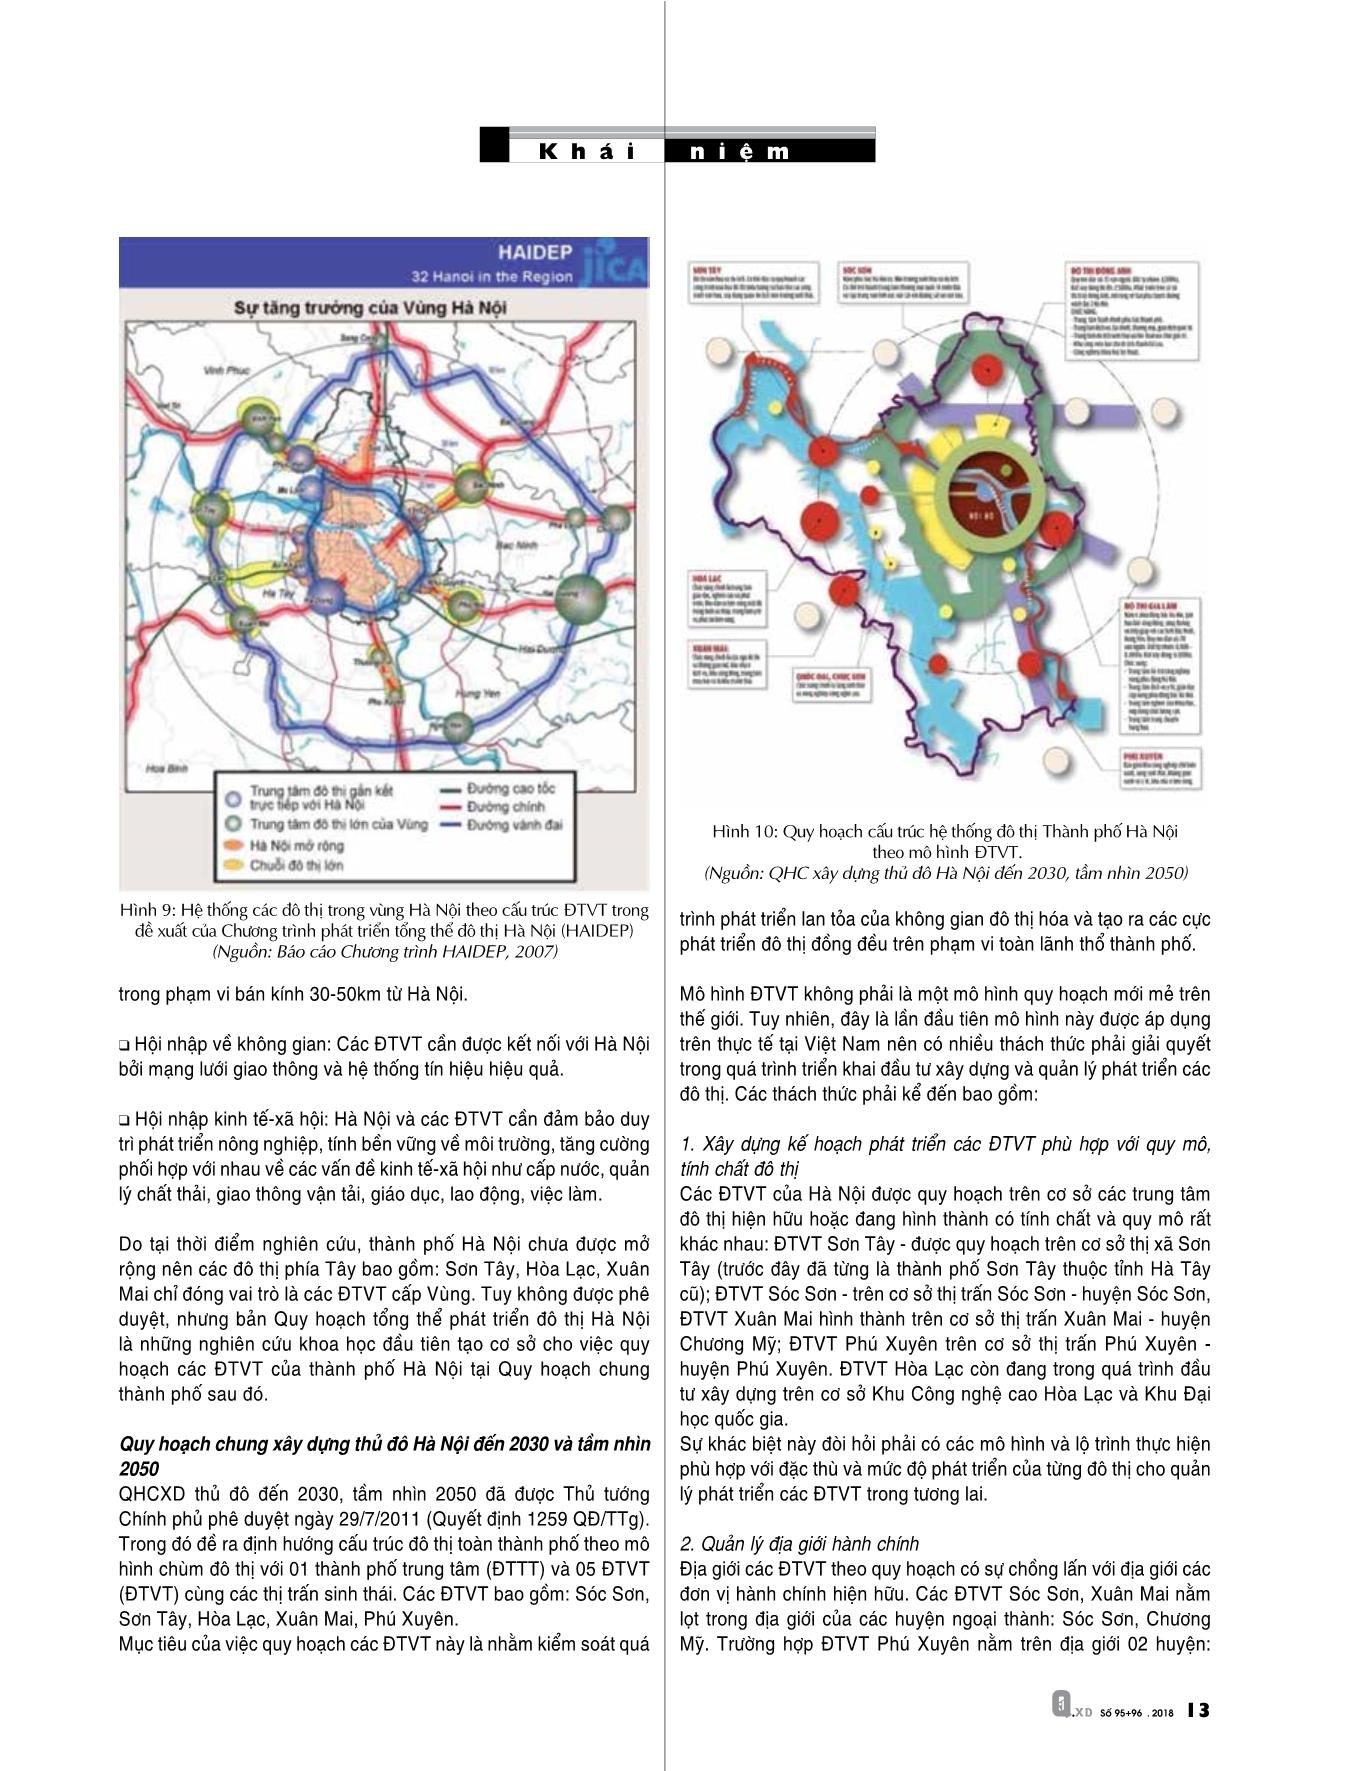 Tổng quan về mô hình quy hoạch đô thị vệ tinh trang 7